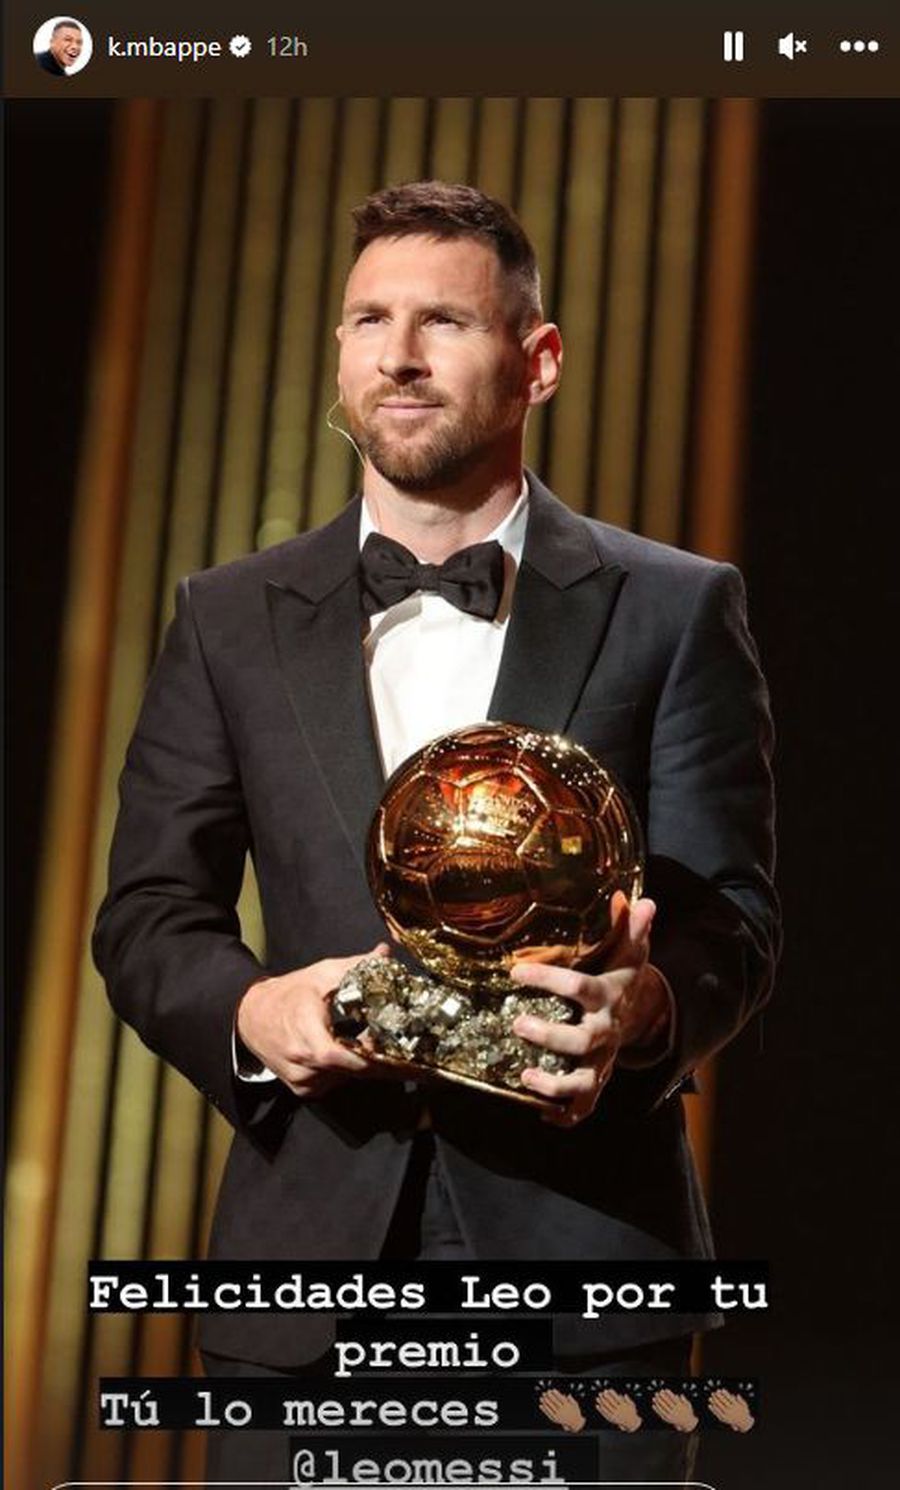 Reacția lui Mbappe, după ce Lionel Messi a devenit „Balon de Aur”. În vară spunea: „Cred că merit să îl câștig, da”